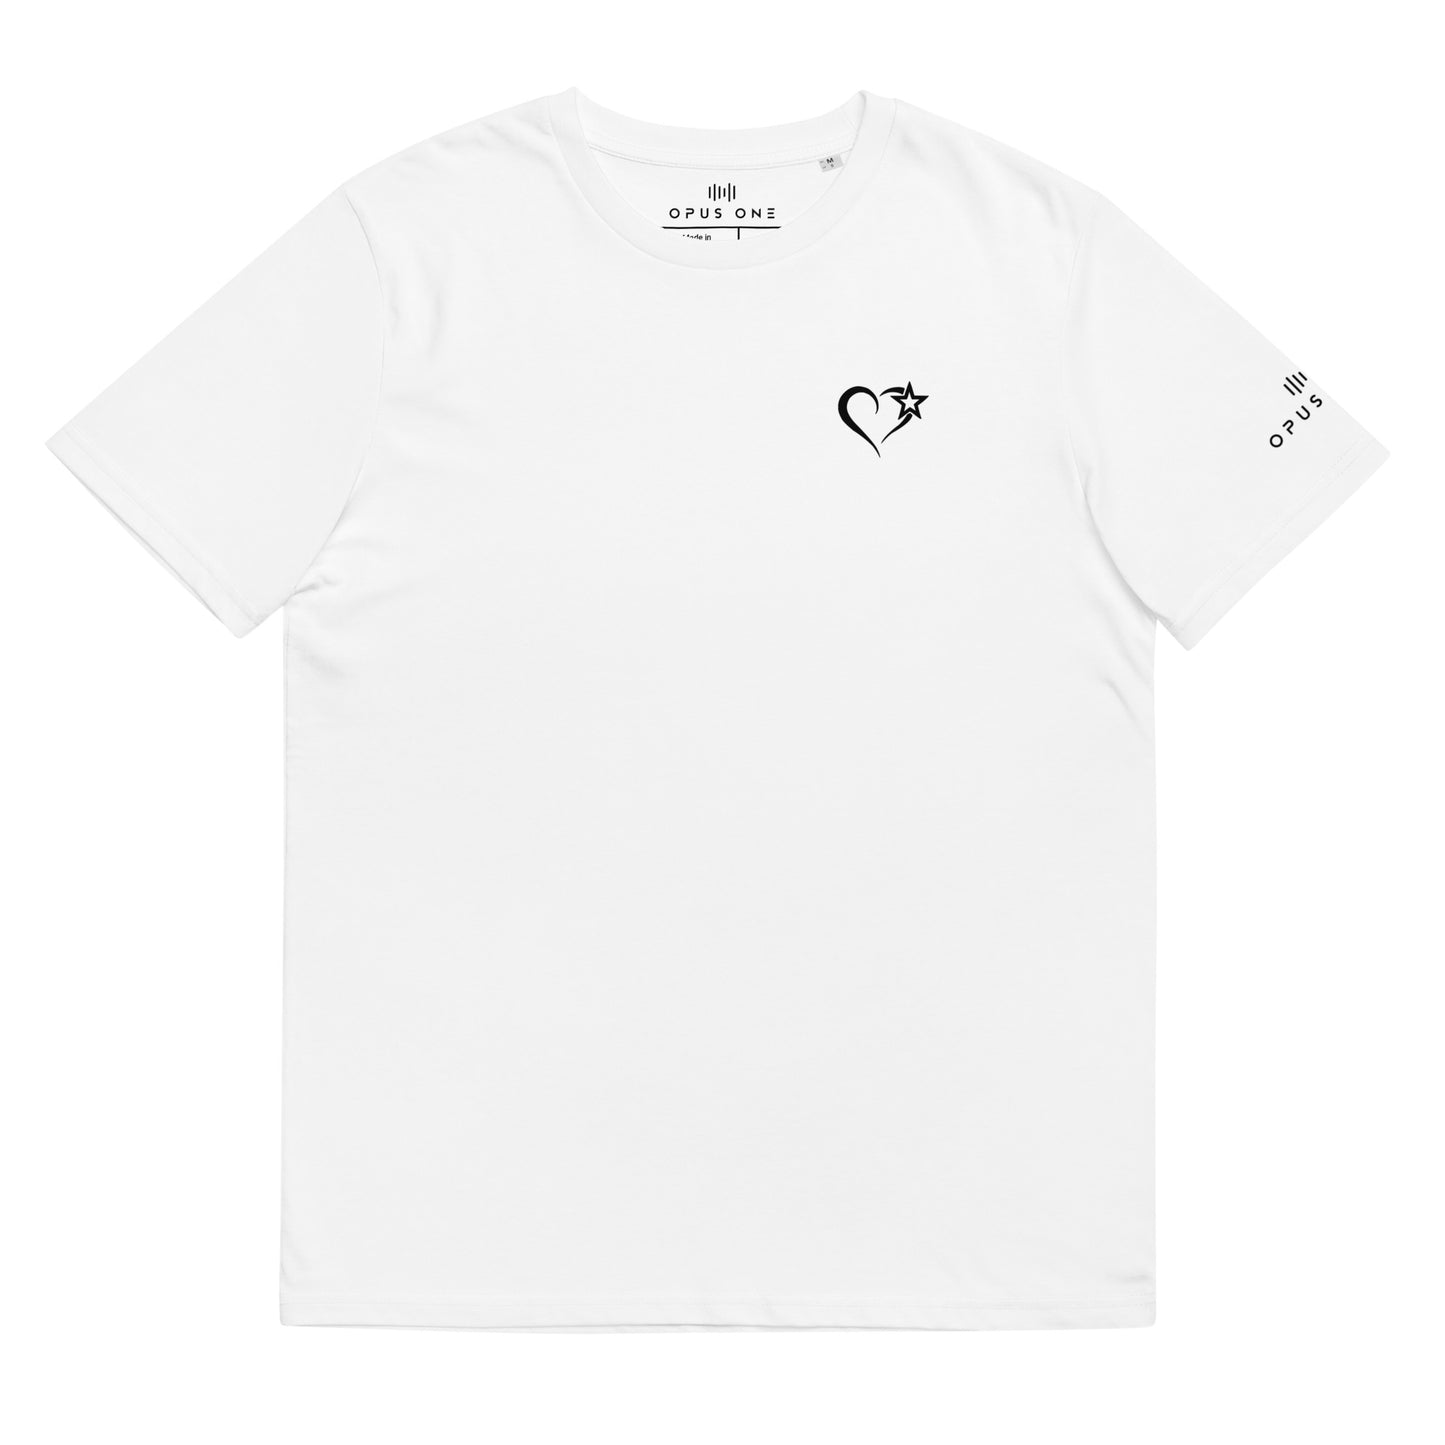 D&B (v3) Unisex organic cotton t-shirt (Black Text)